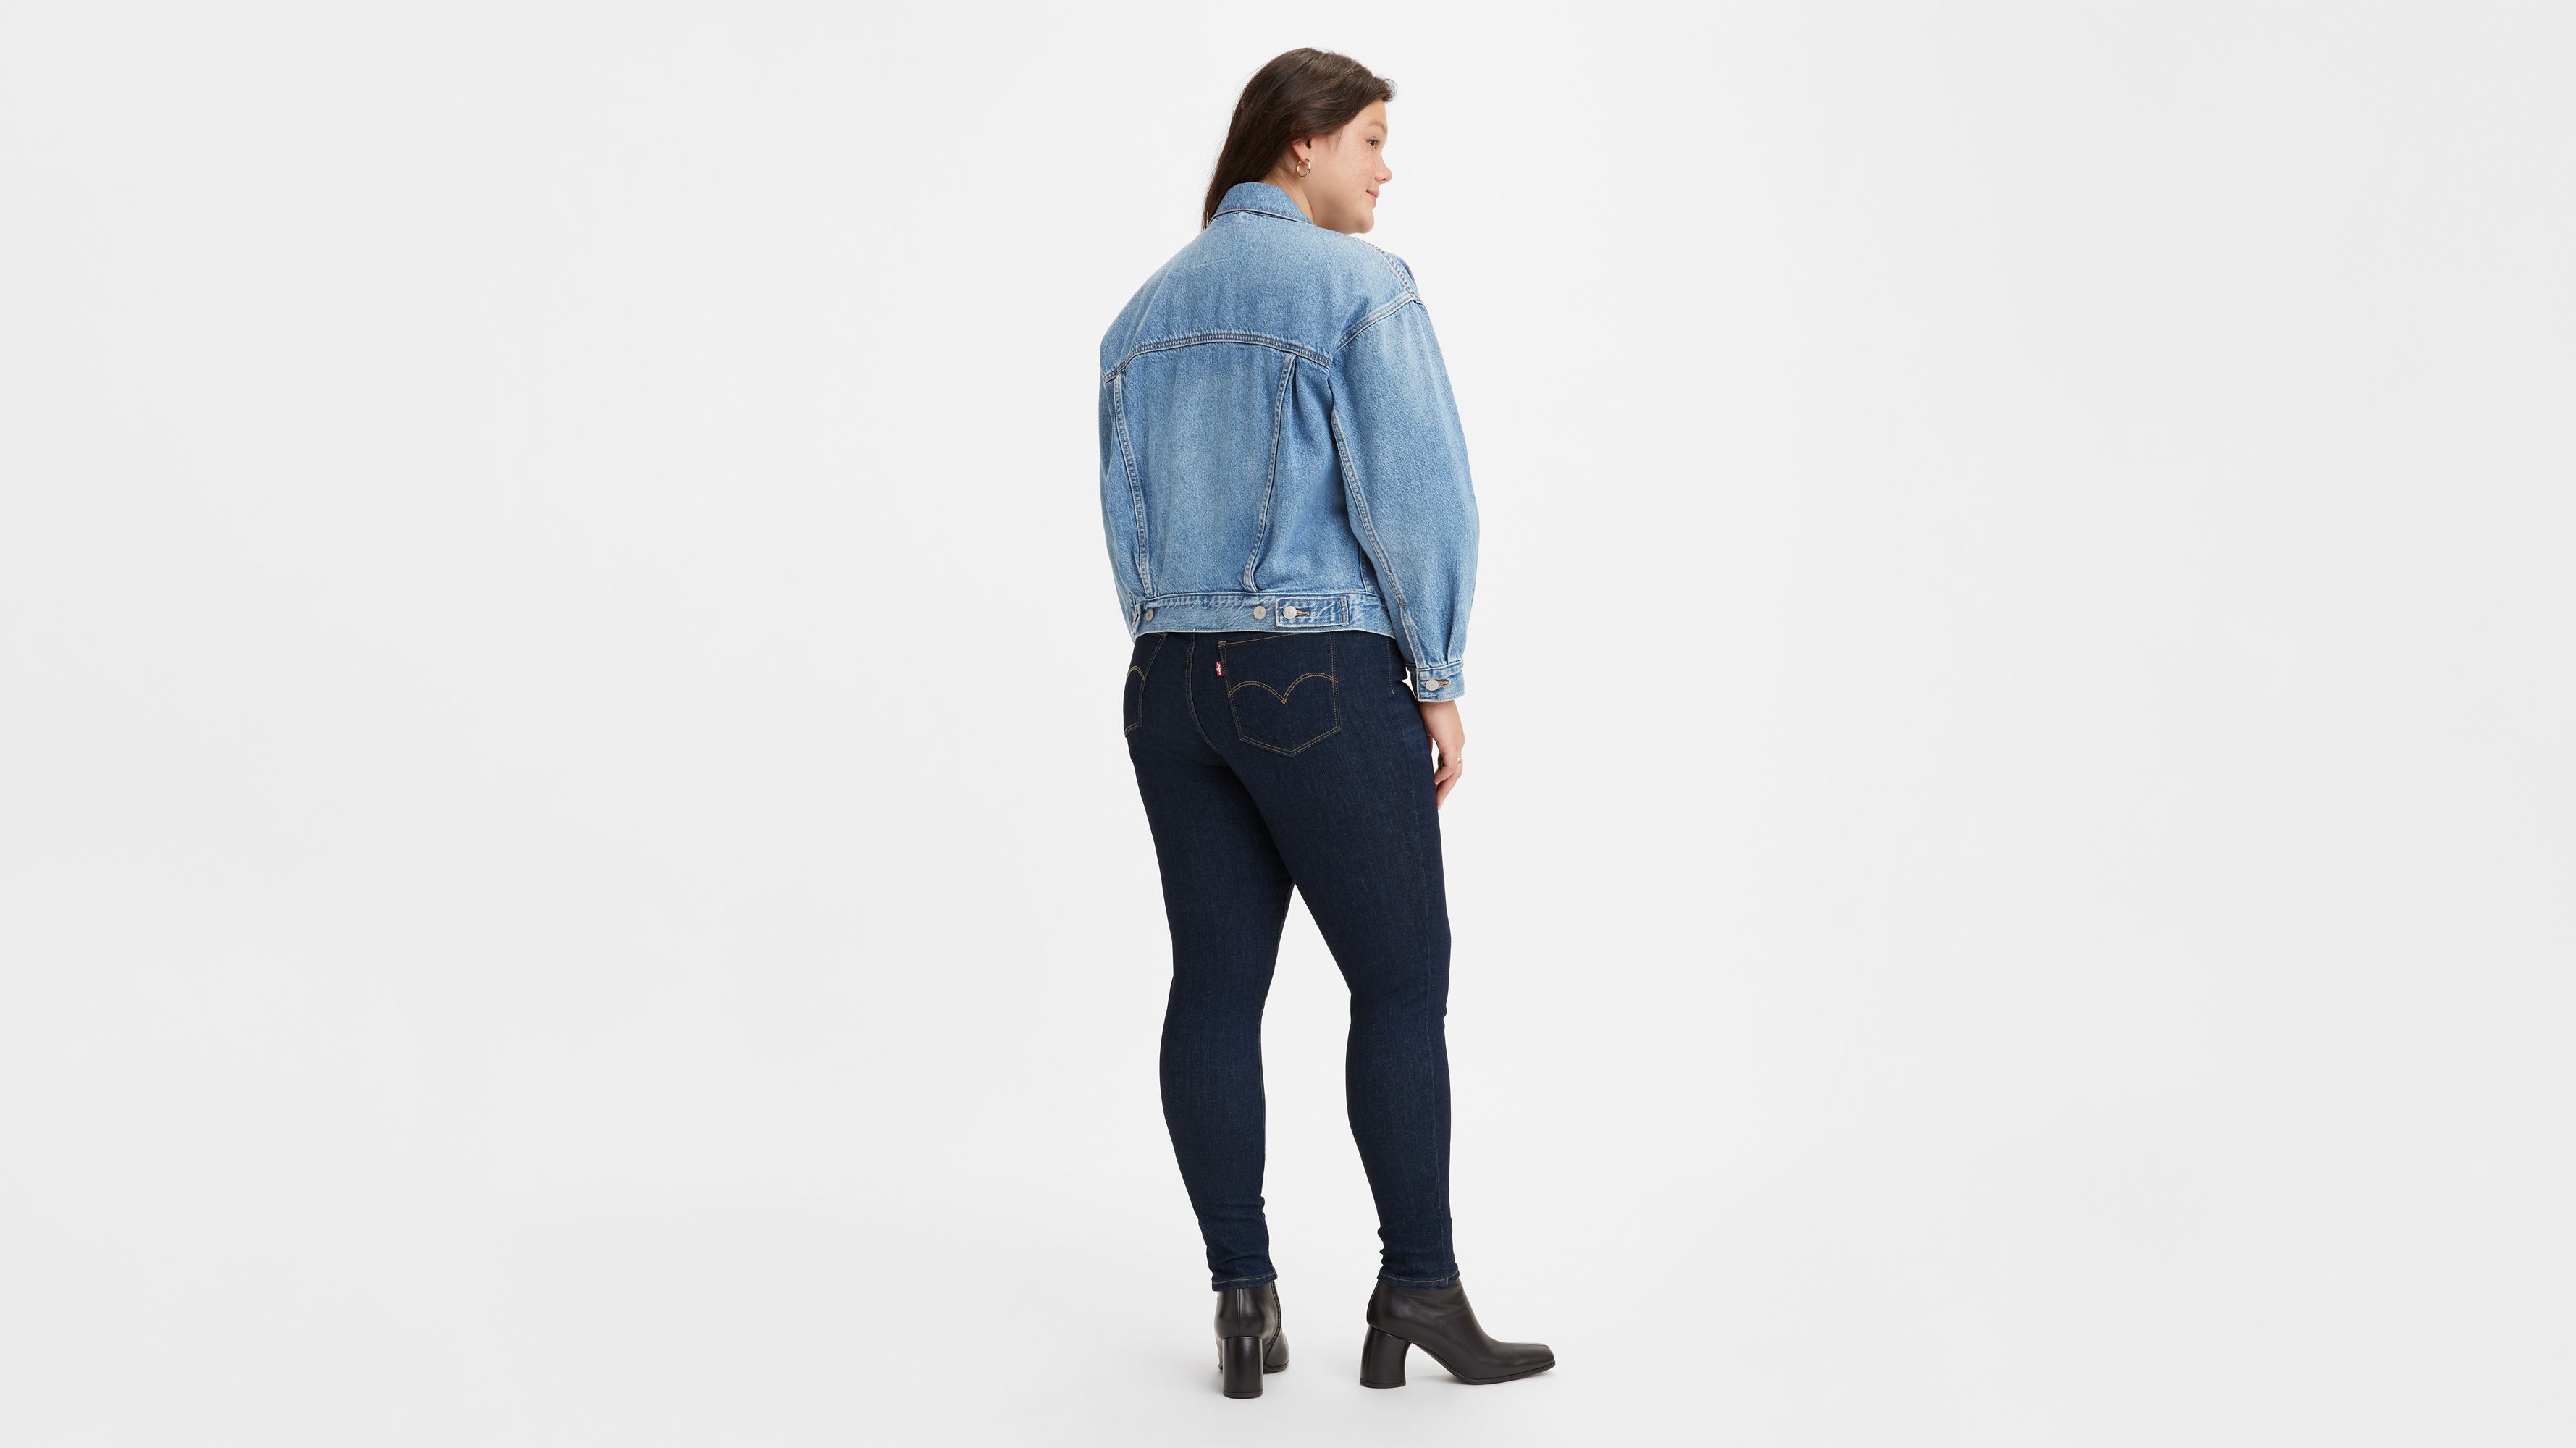 720 High Rise Super Skinny Leopard Print Women's Jeans - Multi